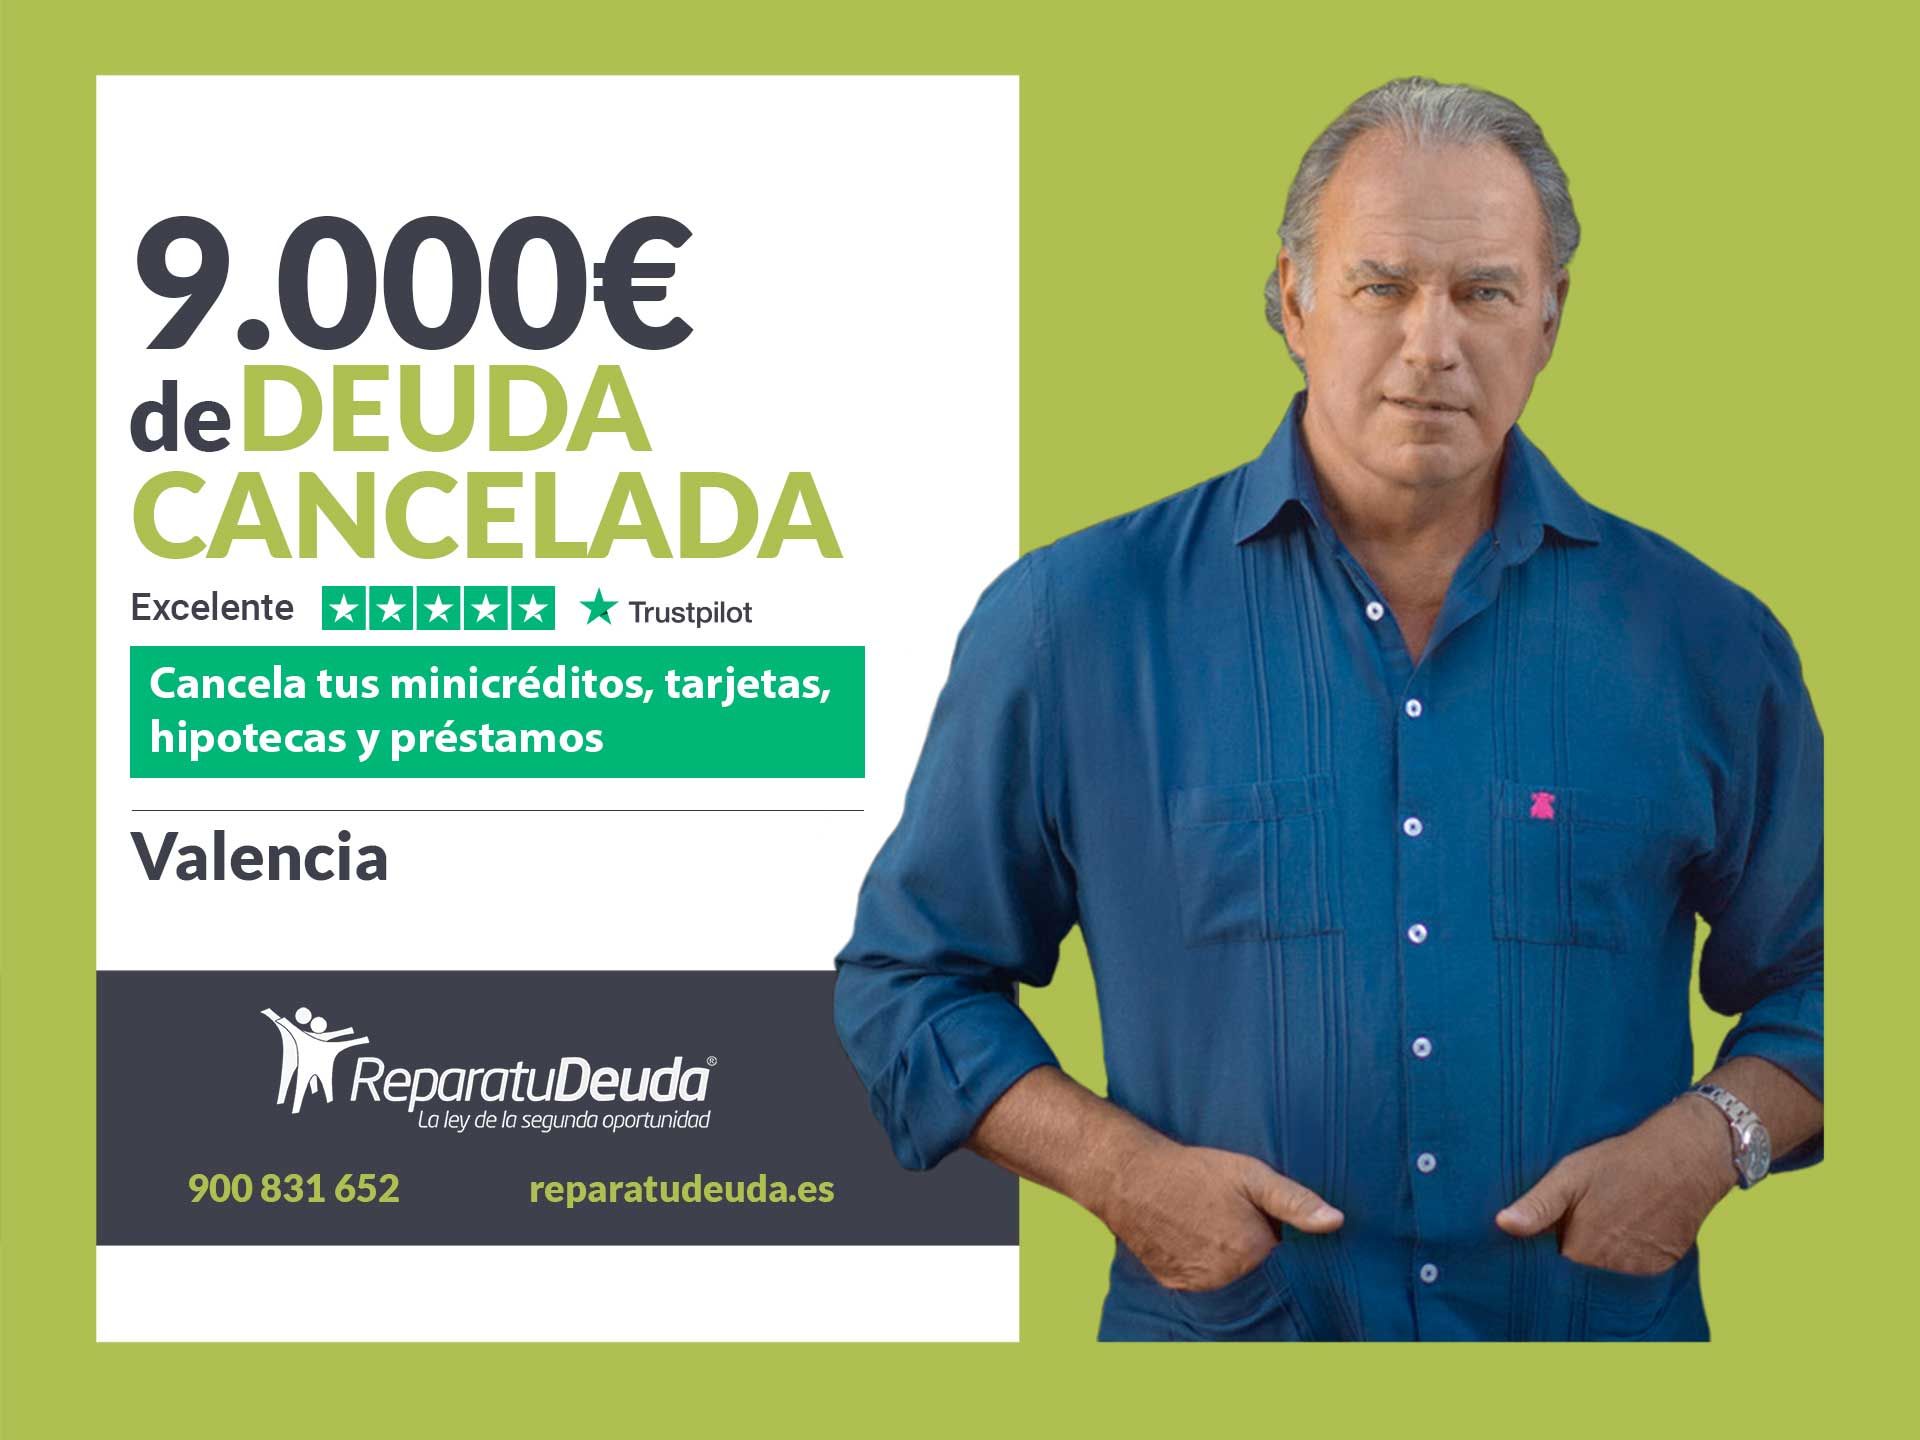 Repara tu Deuda Abogados cancela 9.000? en Valencia con la Ley de Segunda Oportunidad